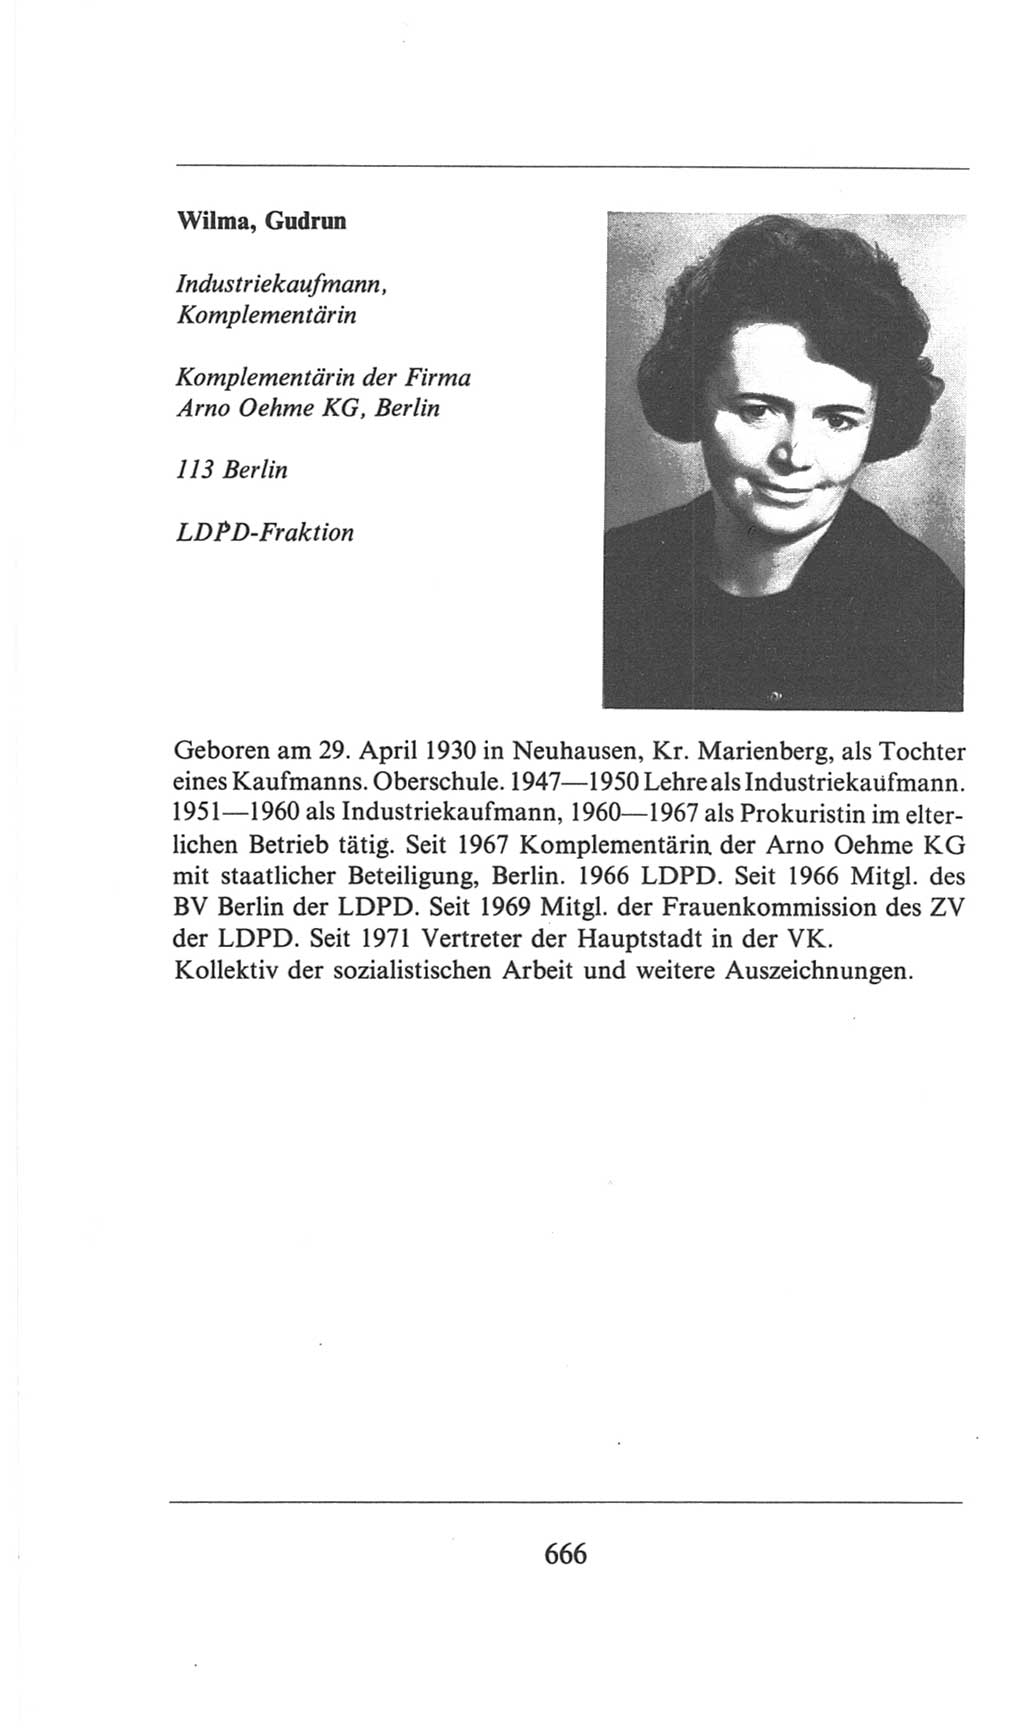 Volkskammer (VK) der Deutschen Demokratischen Republik (DDR), 6. Wahlperiode 1971-1976, Seite 666 (VK. DDR 6. WP. 1971-1976, S. 666)